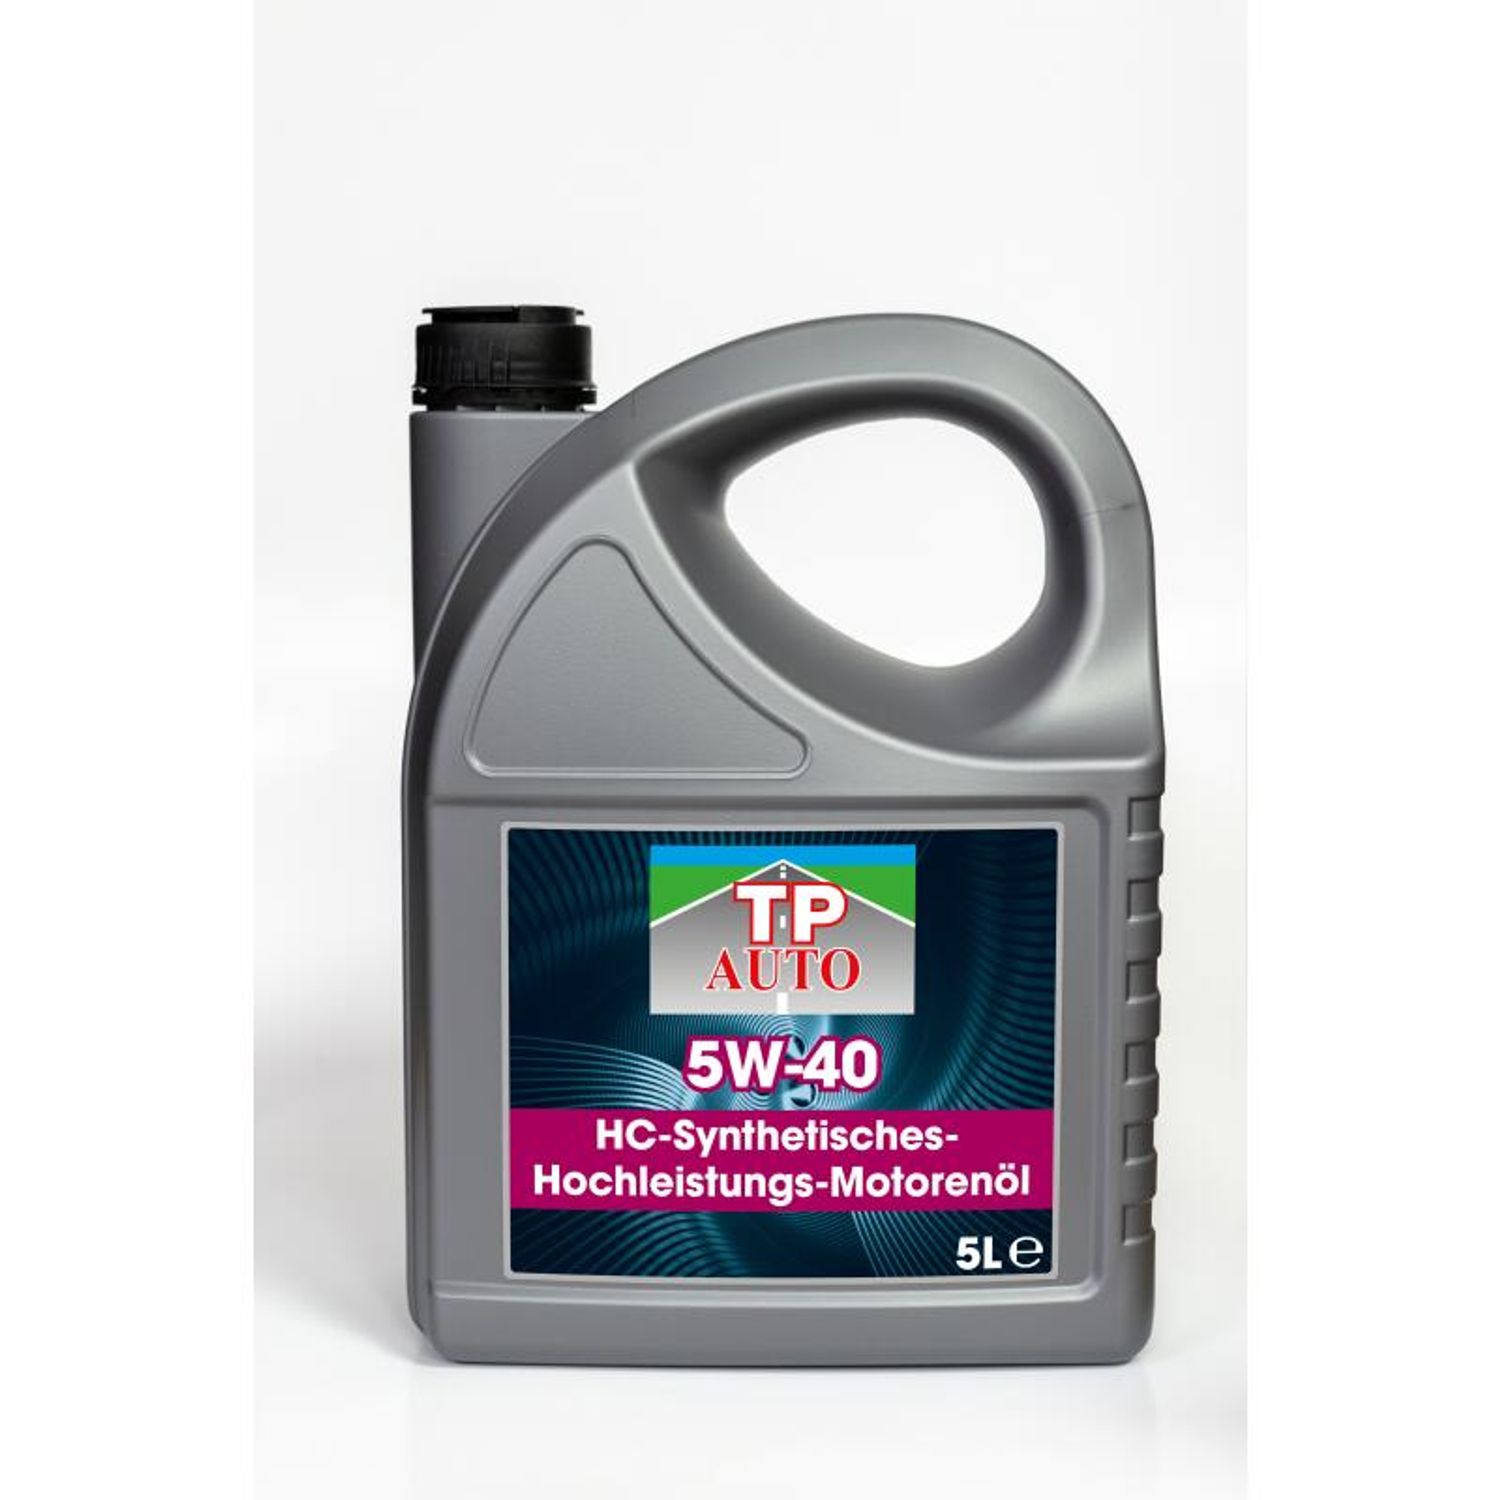 5 Liter TP Auto Motorenöl 5W-40 HC-Synthetisches Hochleistungs-Motorenöl |  1a-Handelsagentur